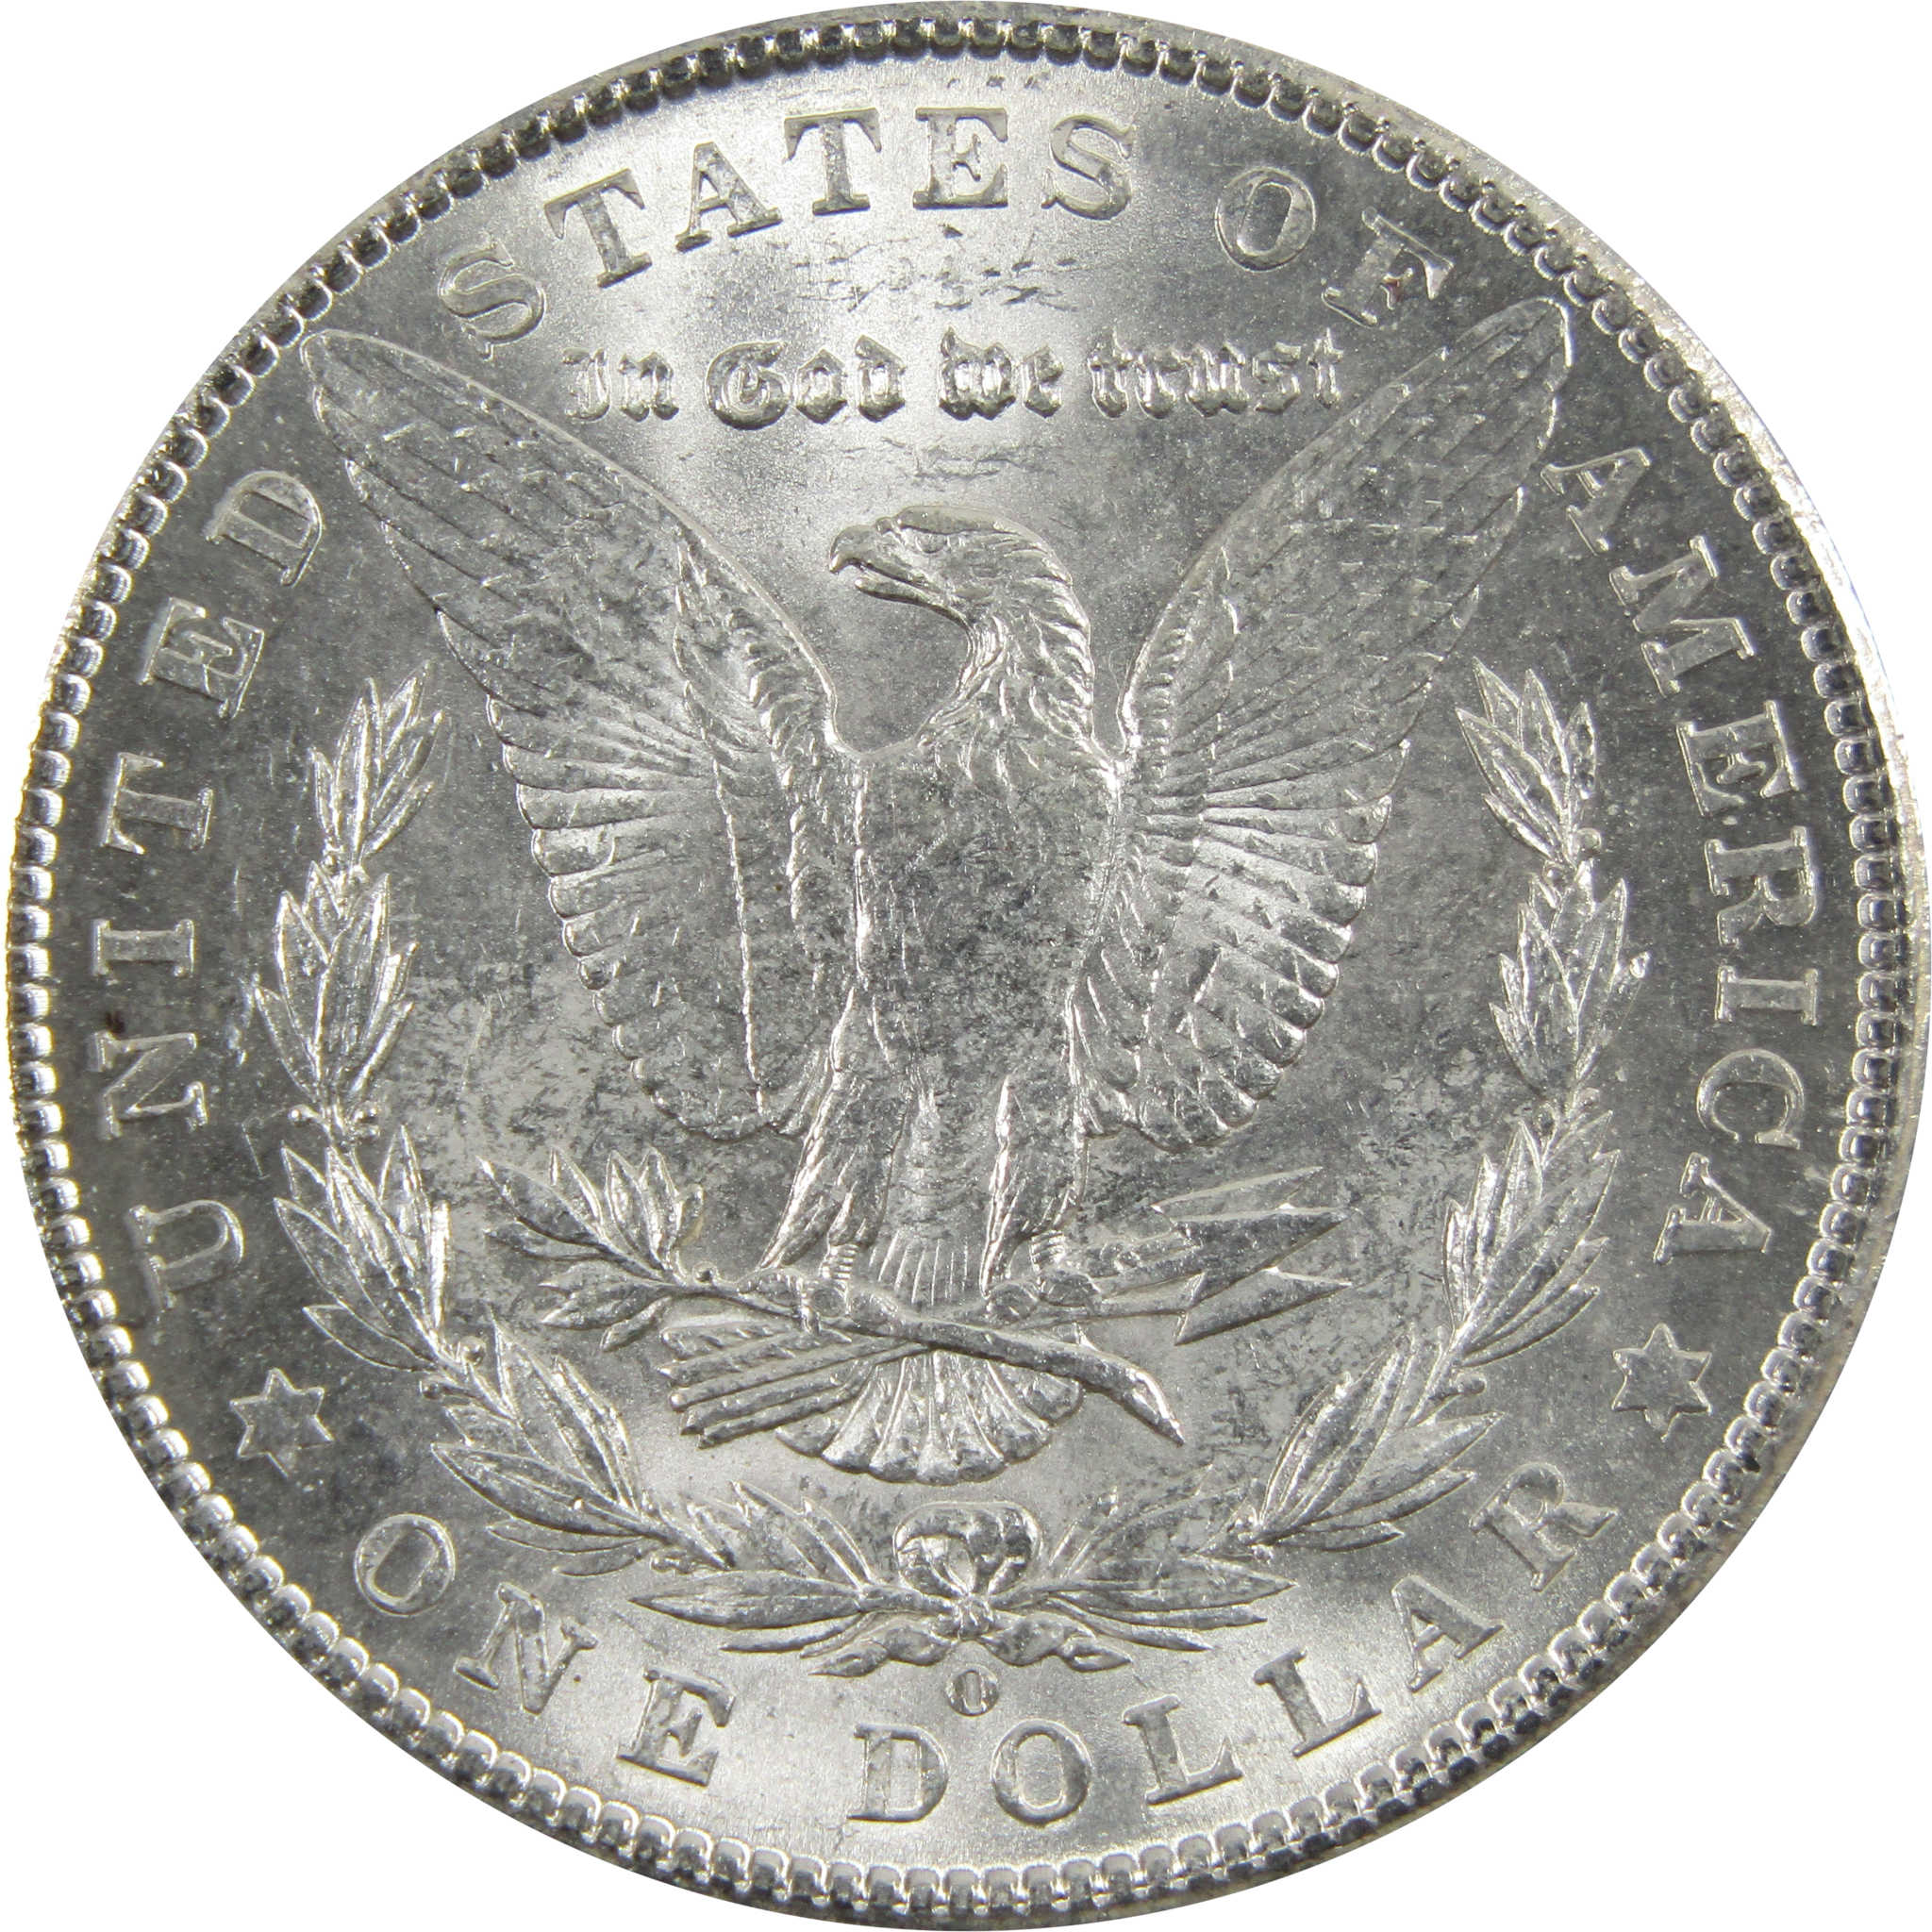 1902 O Morgan Dollar BU Uncirculated 90% Silver $1 Coin SKU:I5197 - Morgan coin - Morgan silver dollar - Morgan silver dollar for sale - Profile Coins &amp; Collectibles